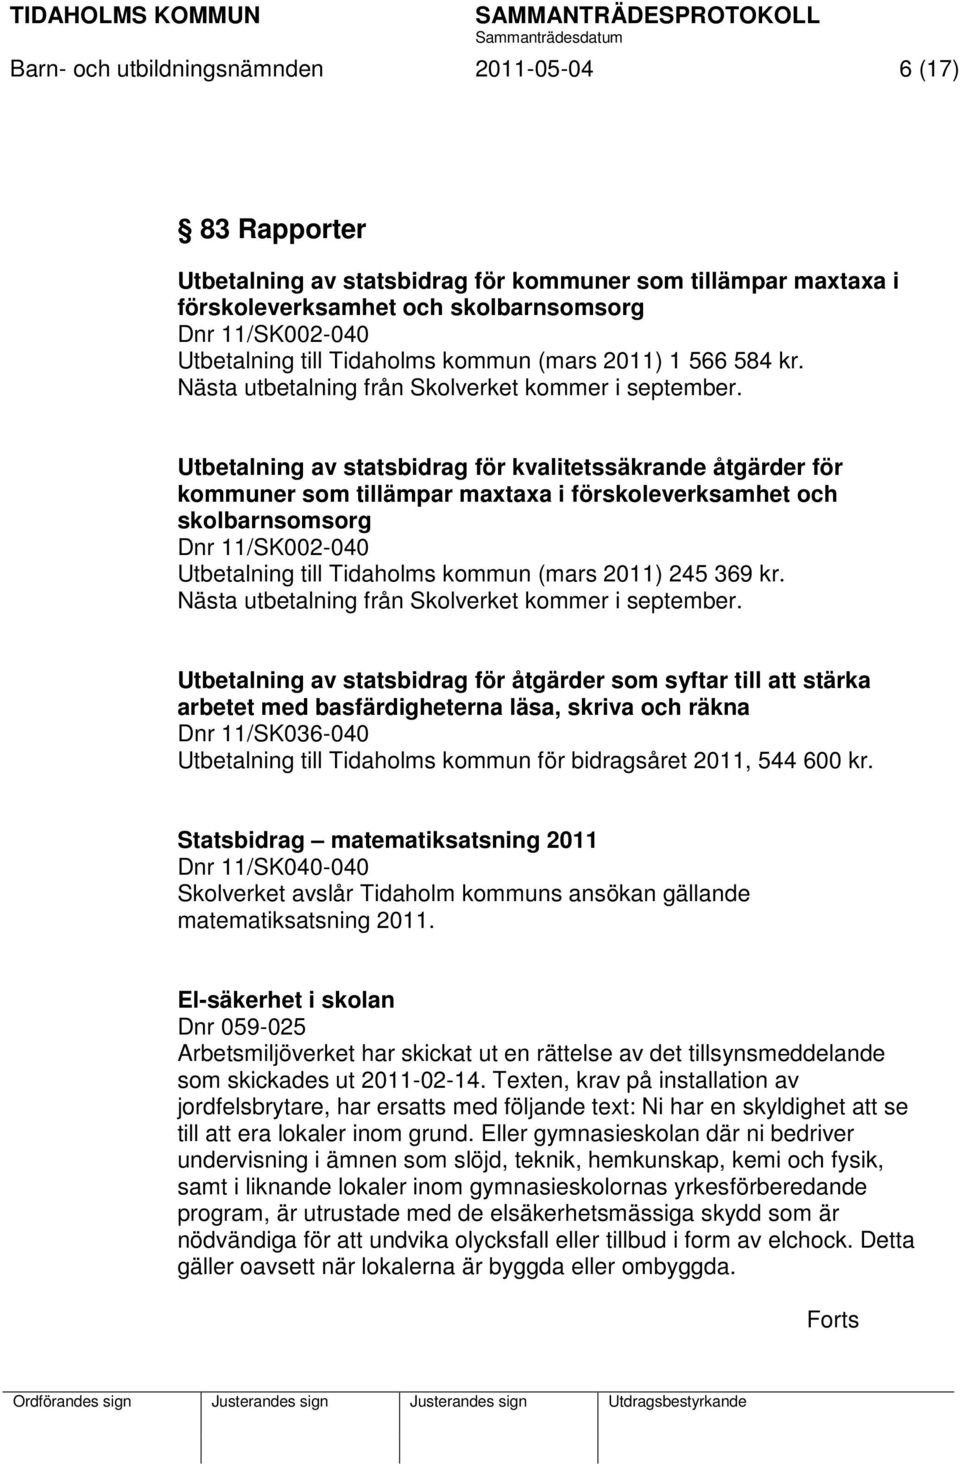 Utbetalning av statsbidrag för kvalitetssäkrande åtgärder för kommuner som tillämpar maxtaxa i förskoleverksamhet och skolbarnsomsorg Dnr 11/SK002-040 Utbetalning till Tidaholms kommun (mars 2011)